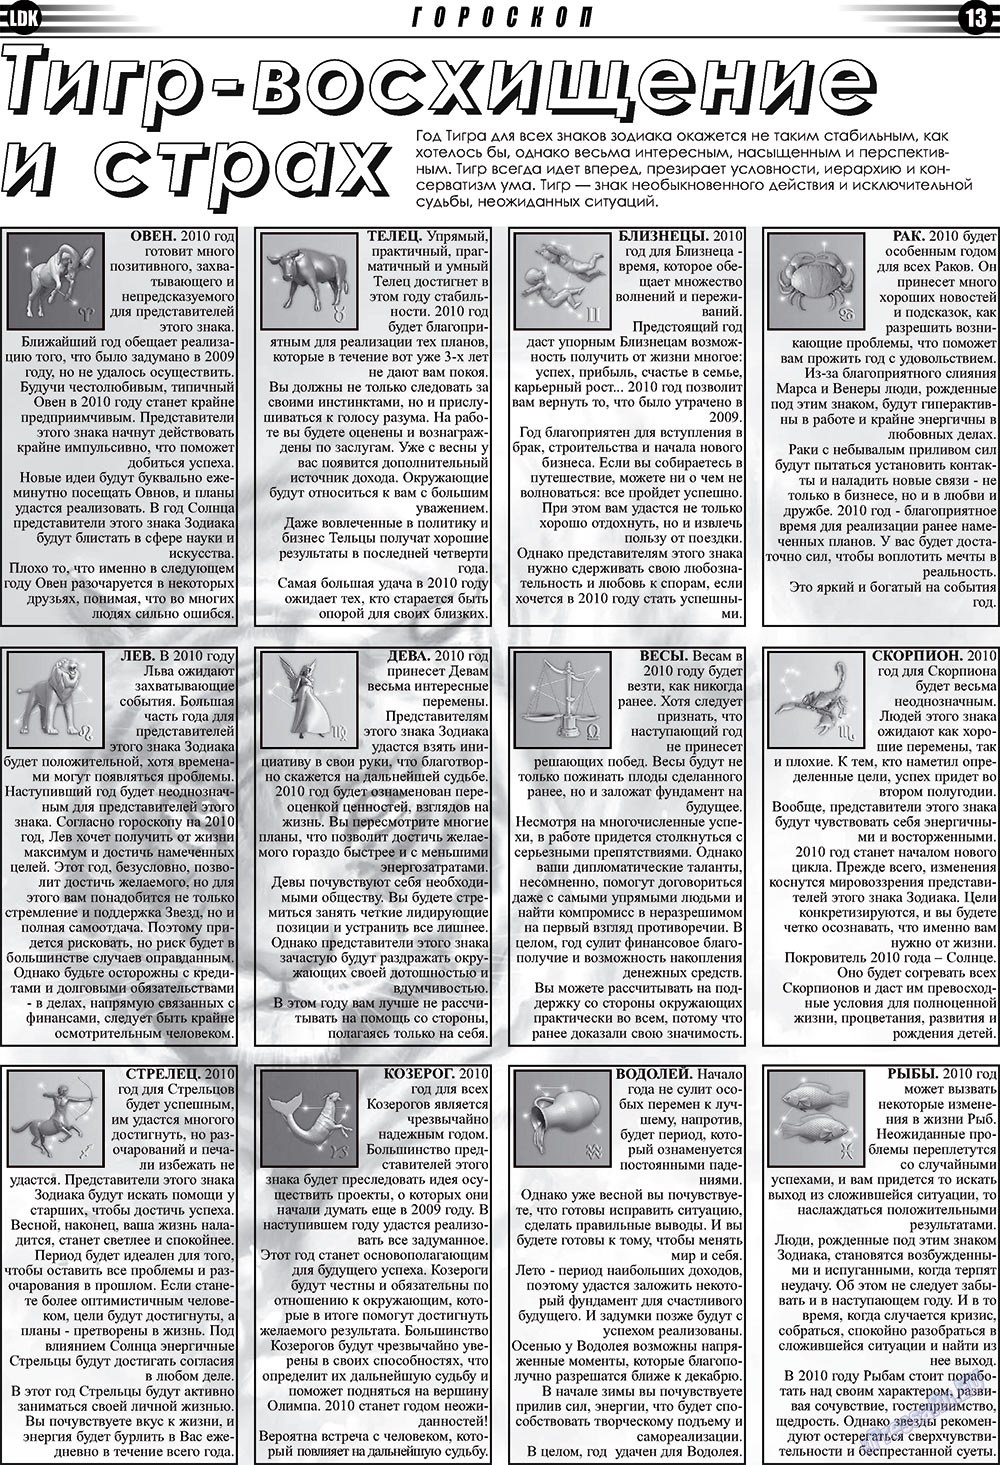 LDK по-русски (газета). 2010 год, номер 1, стр. 13